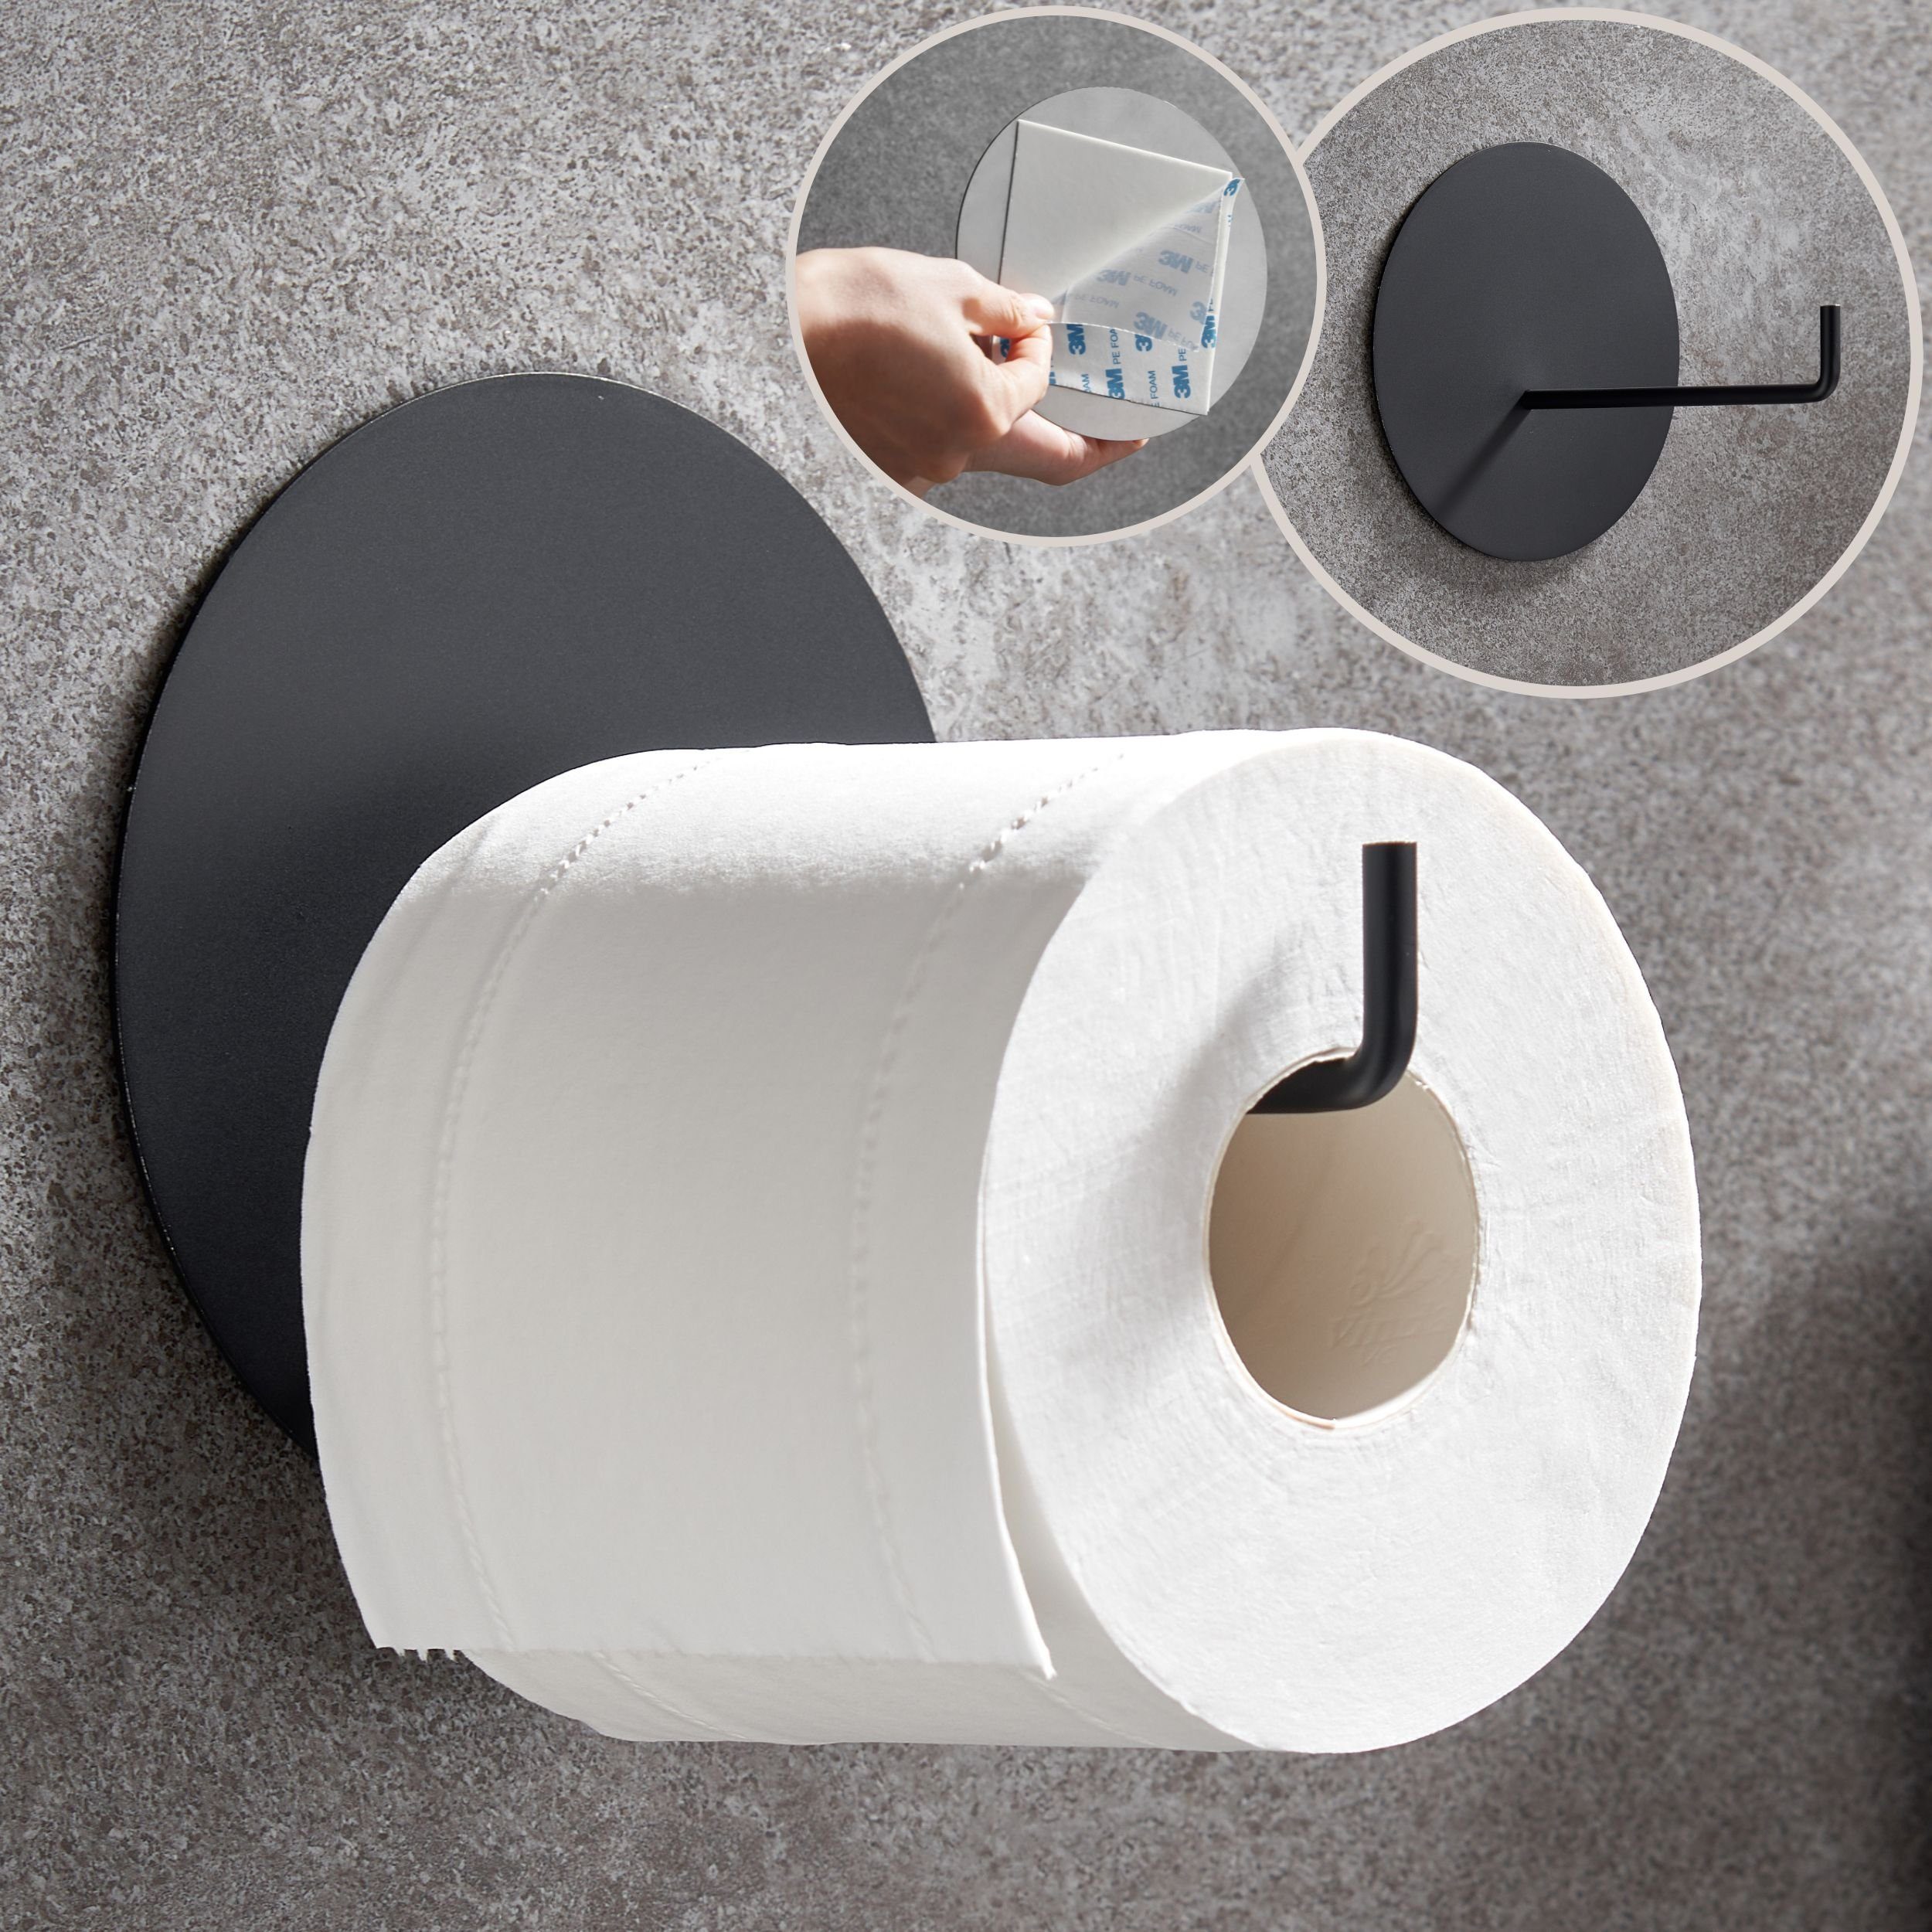 DEKAZIA Toilettenpapierhalter, Rostfreier Edelstahl, ohne Design selbstklebend, schwarz-matt Besonderes Bohren